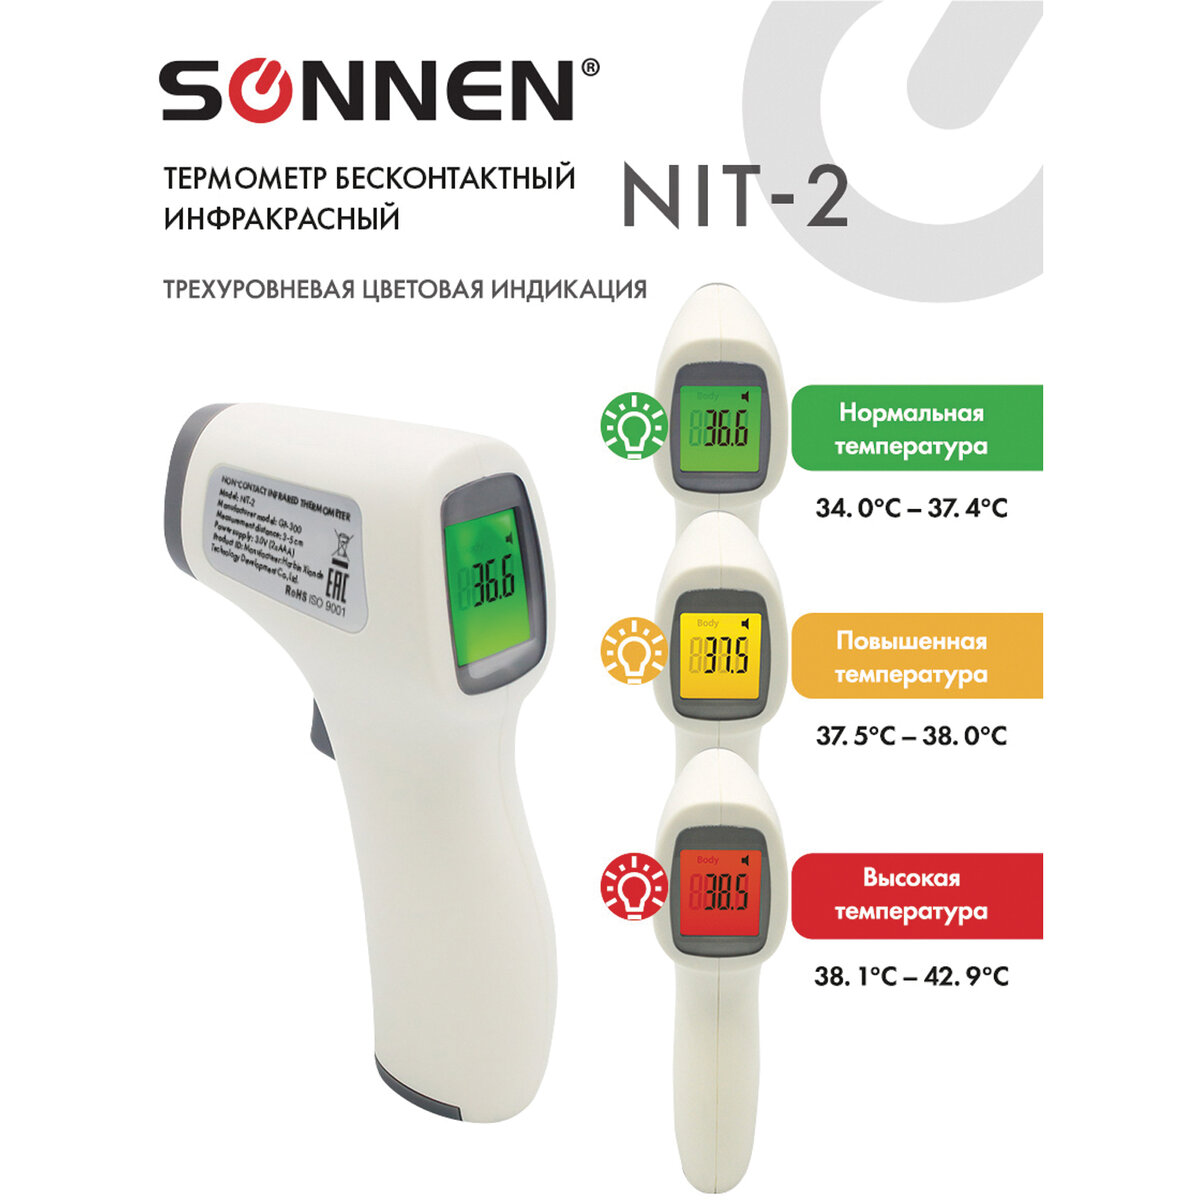 Термометр Sonnen бесконтактный инфракрасный NIT-2 GP-300 электронный - фото 5